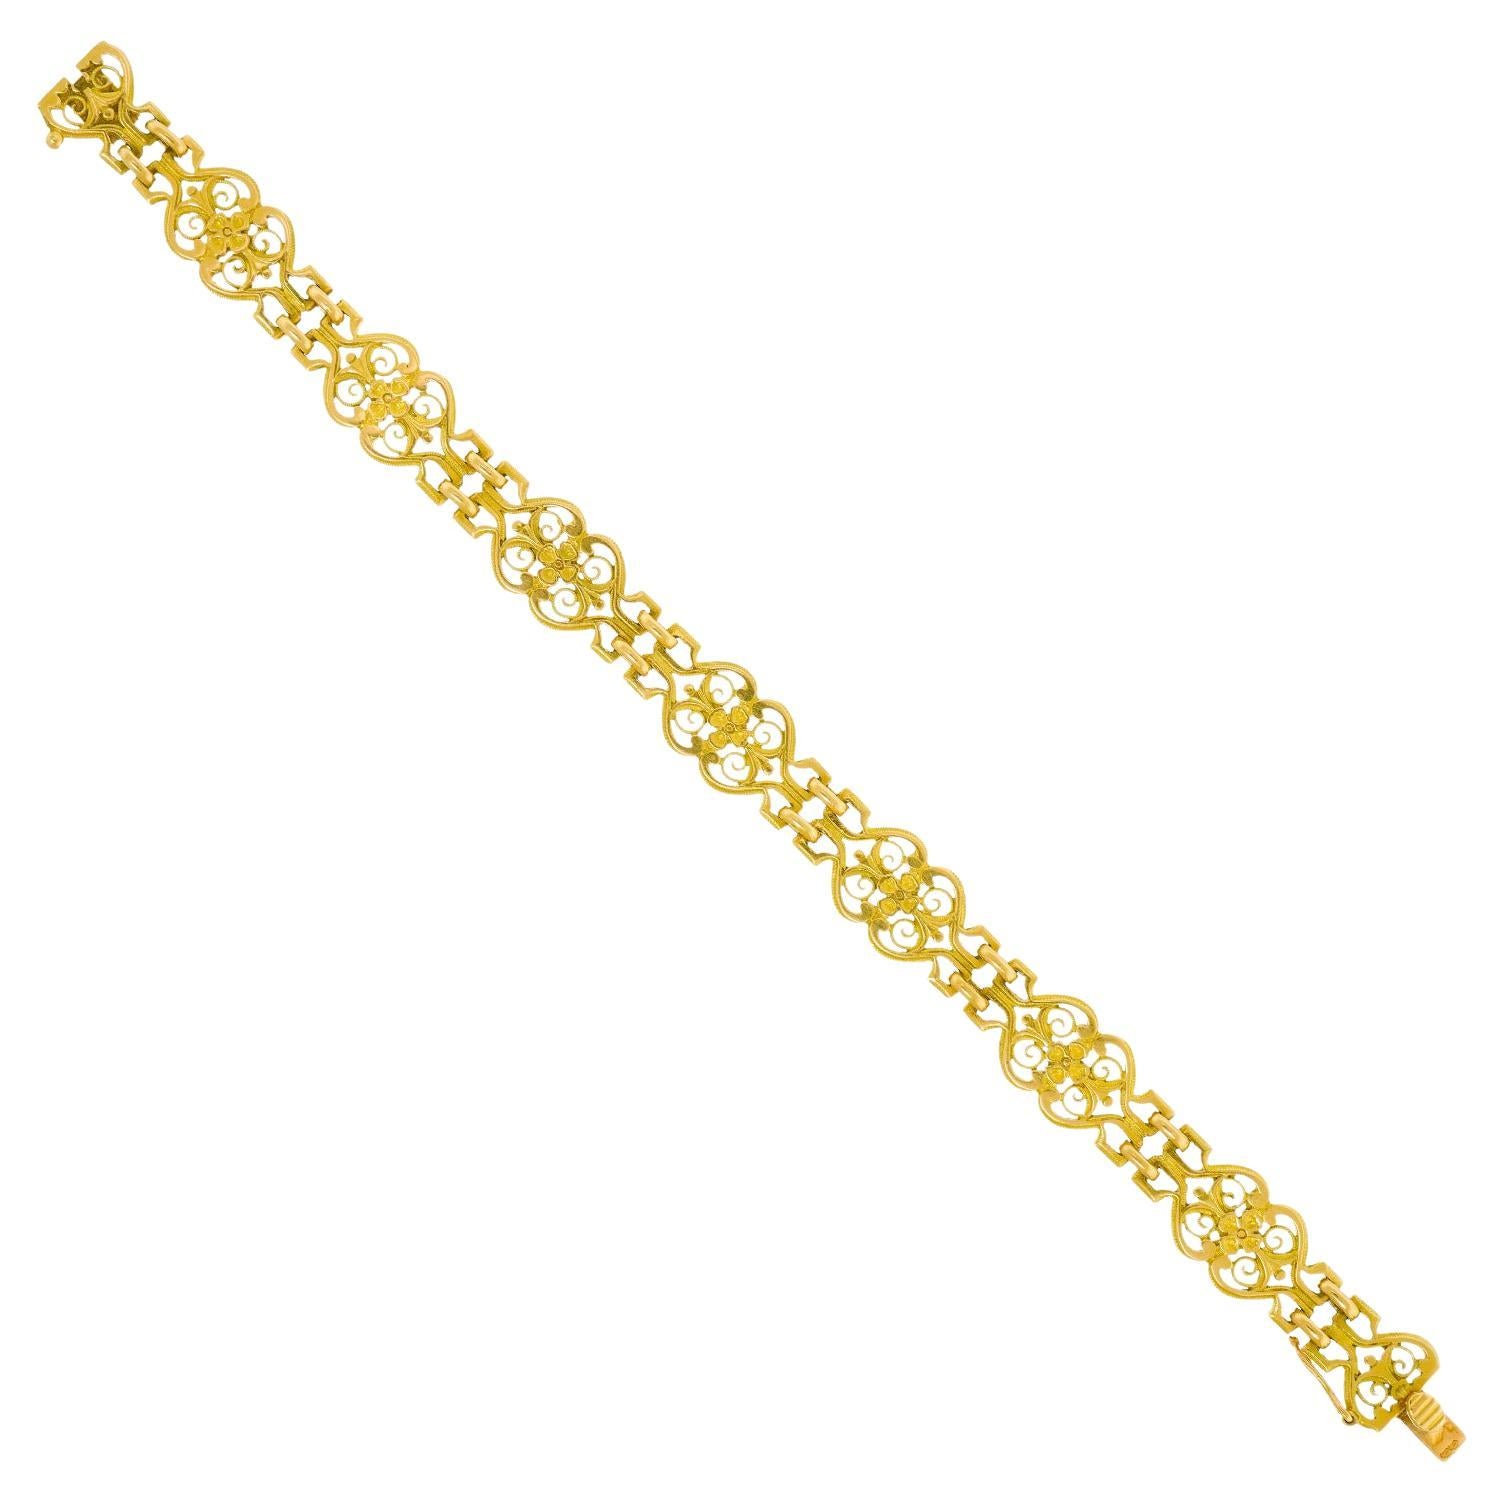 Antique French Gold Filigree Bracelet For Sale